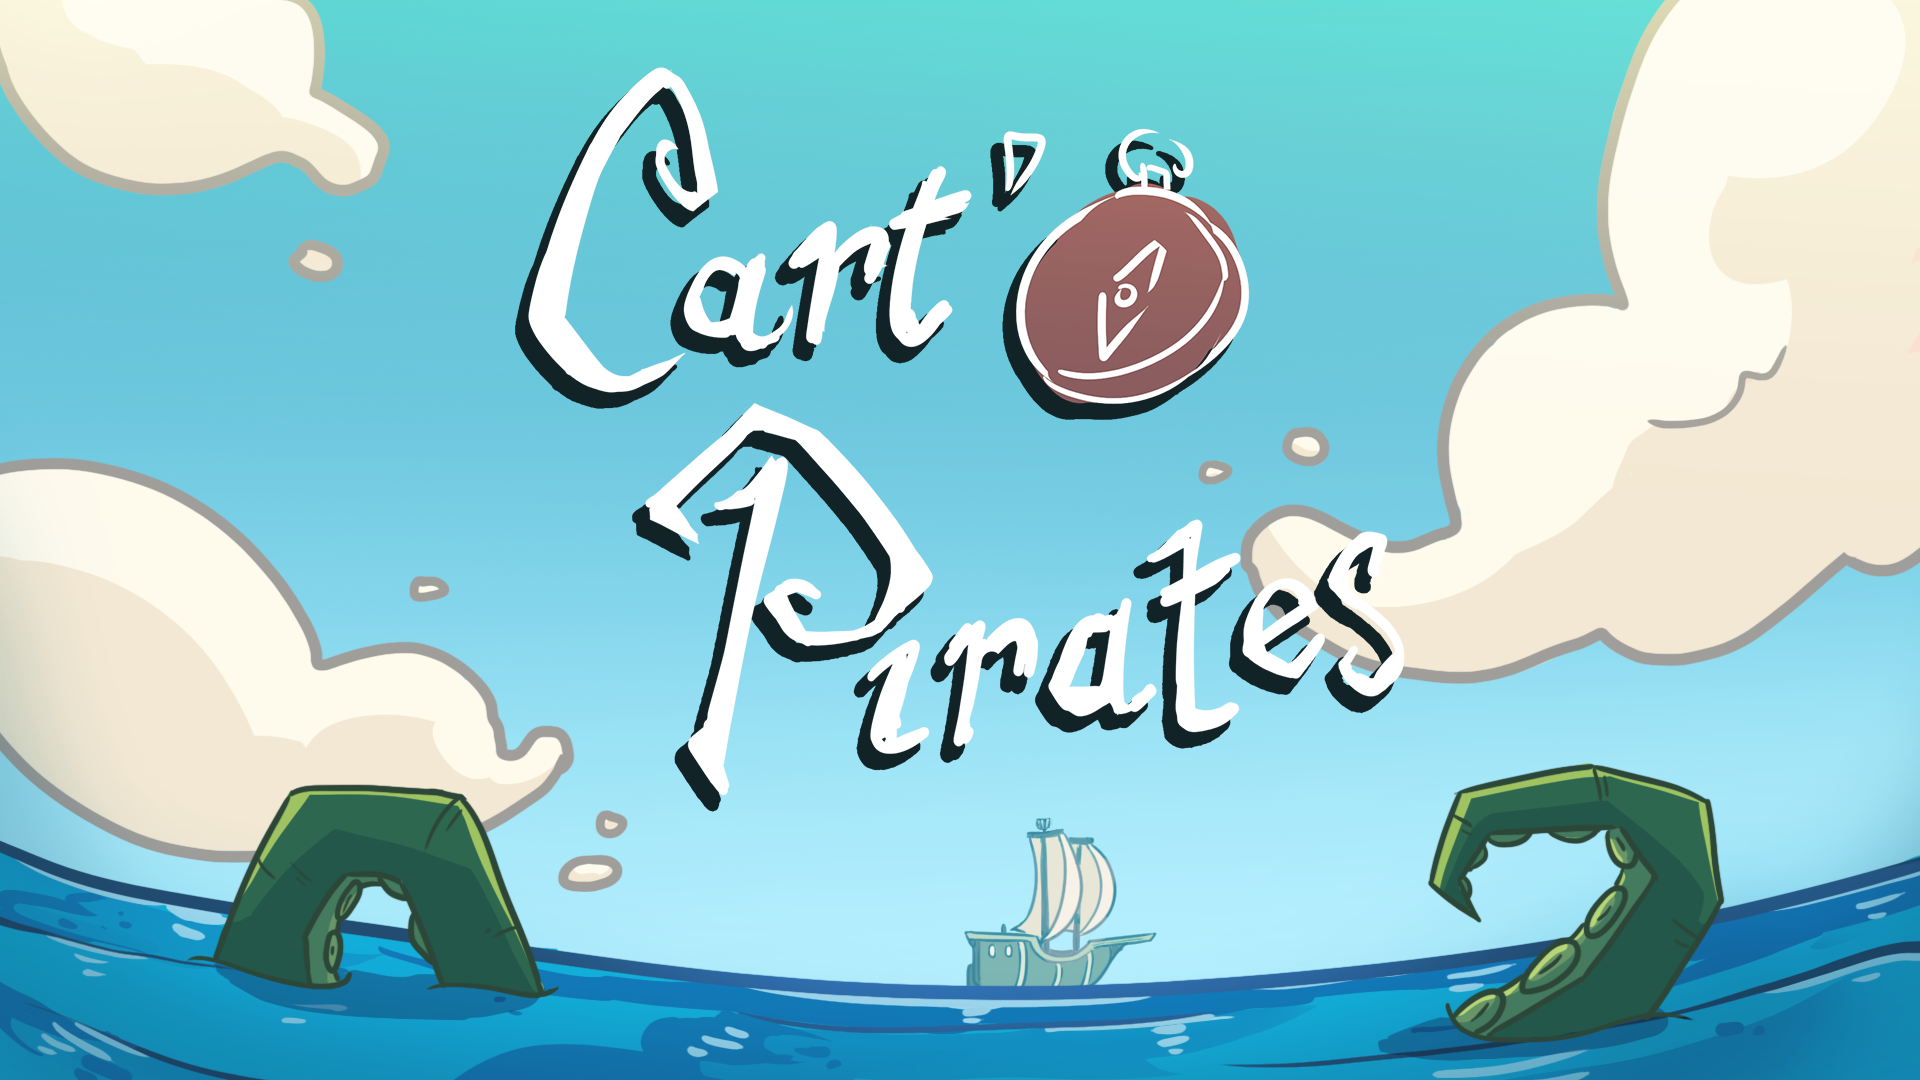 Cart'O Pirates